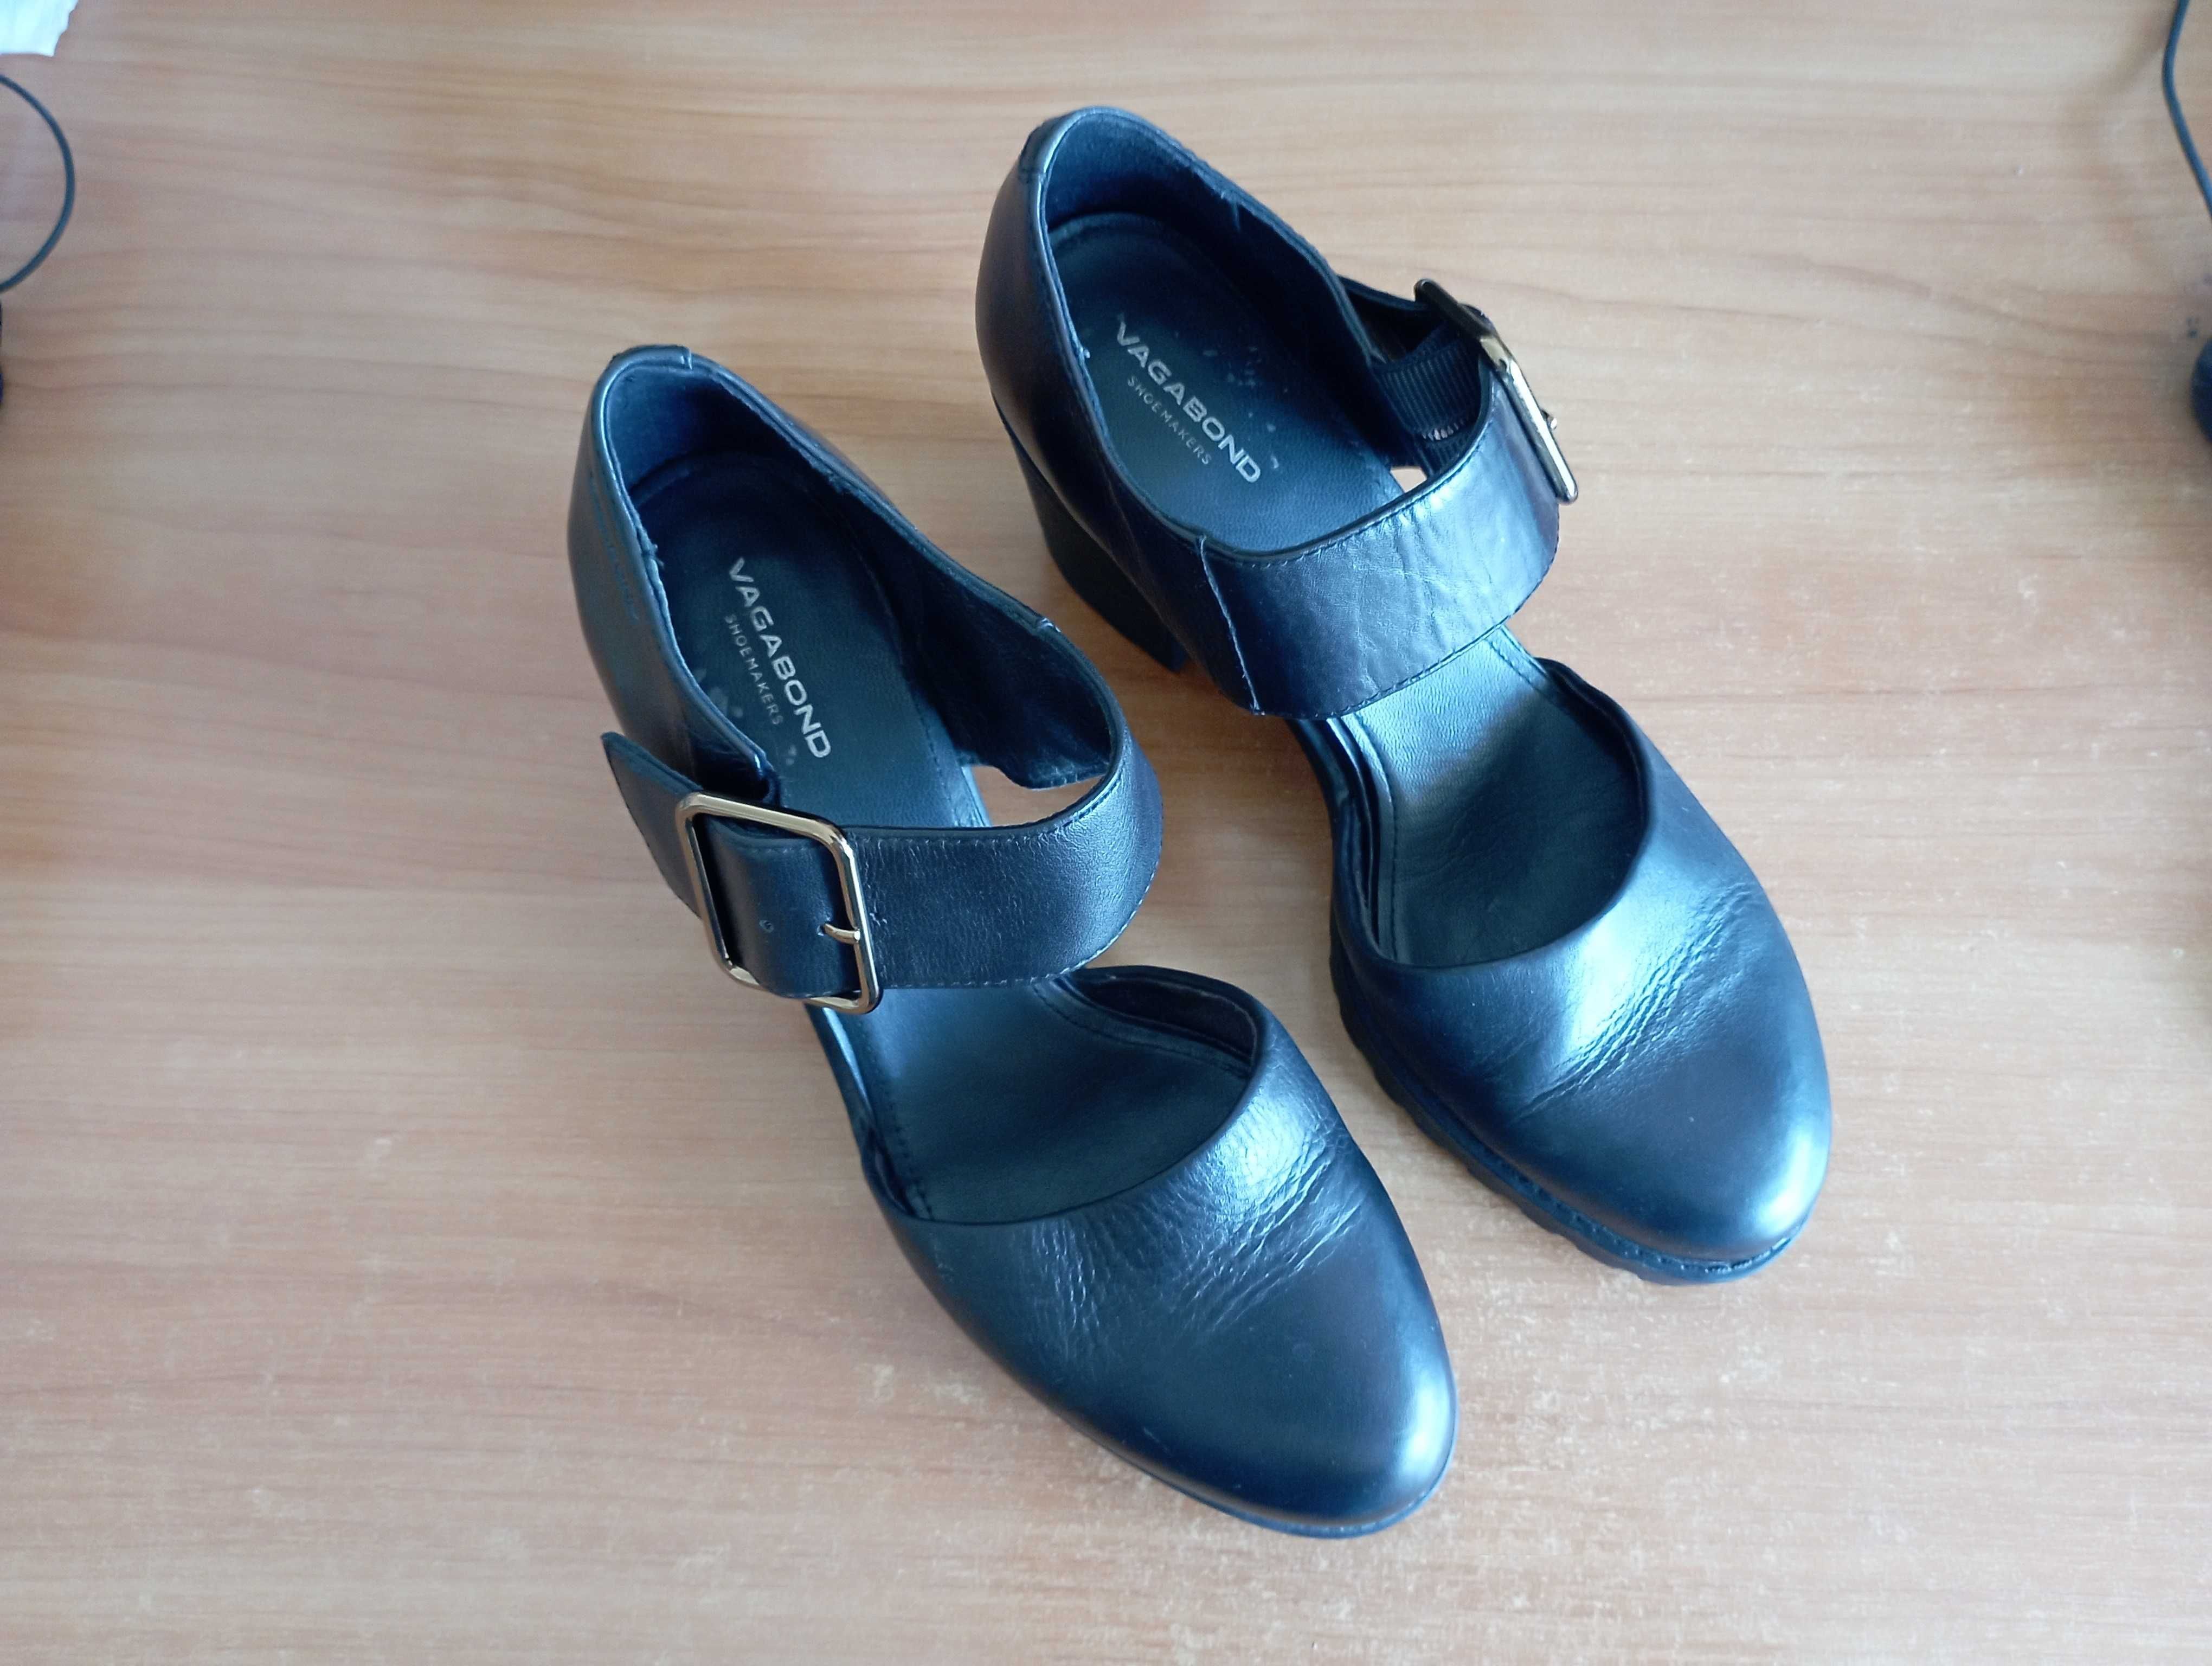 Дамски летни обувки, Vagabond, №38, стелка 25см.